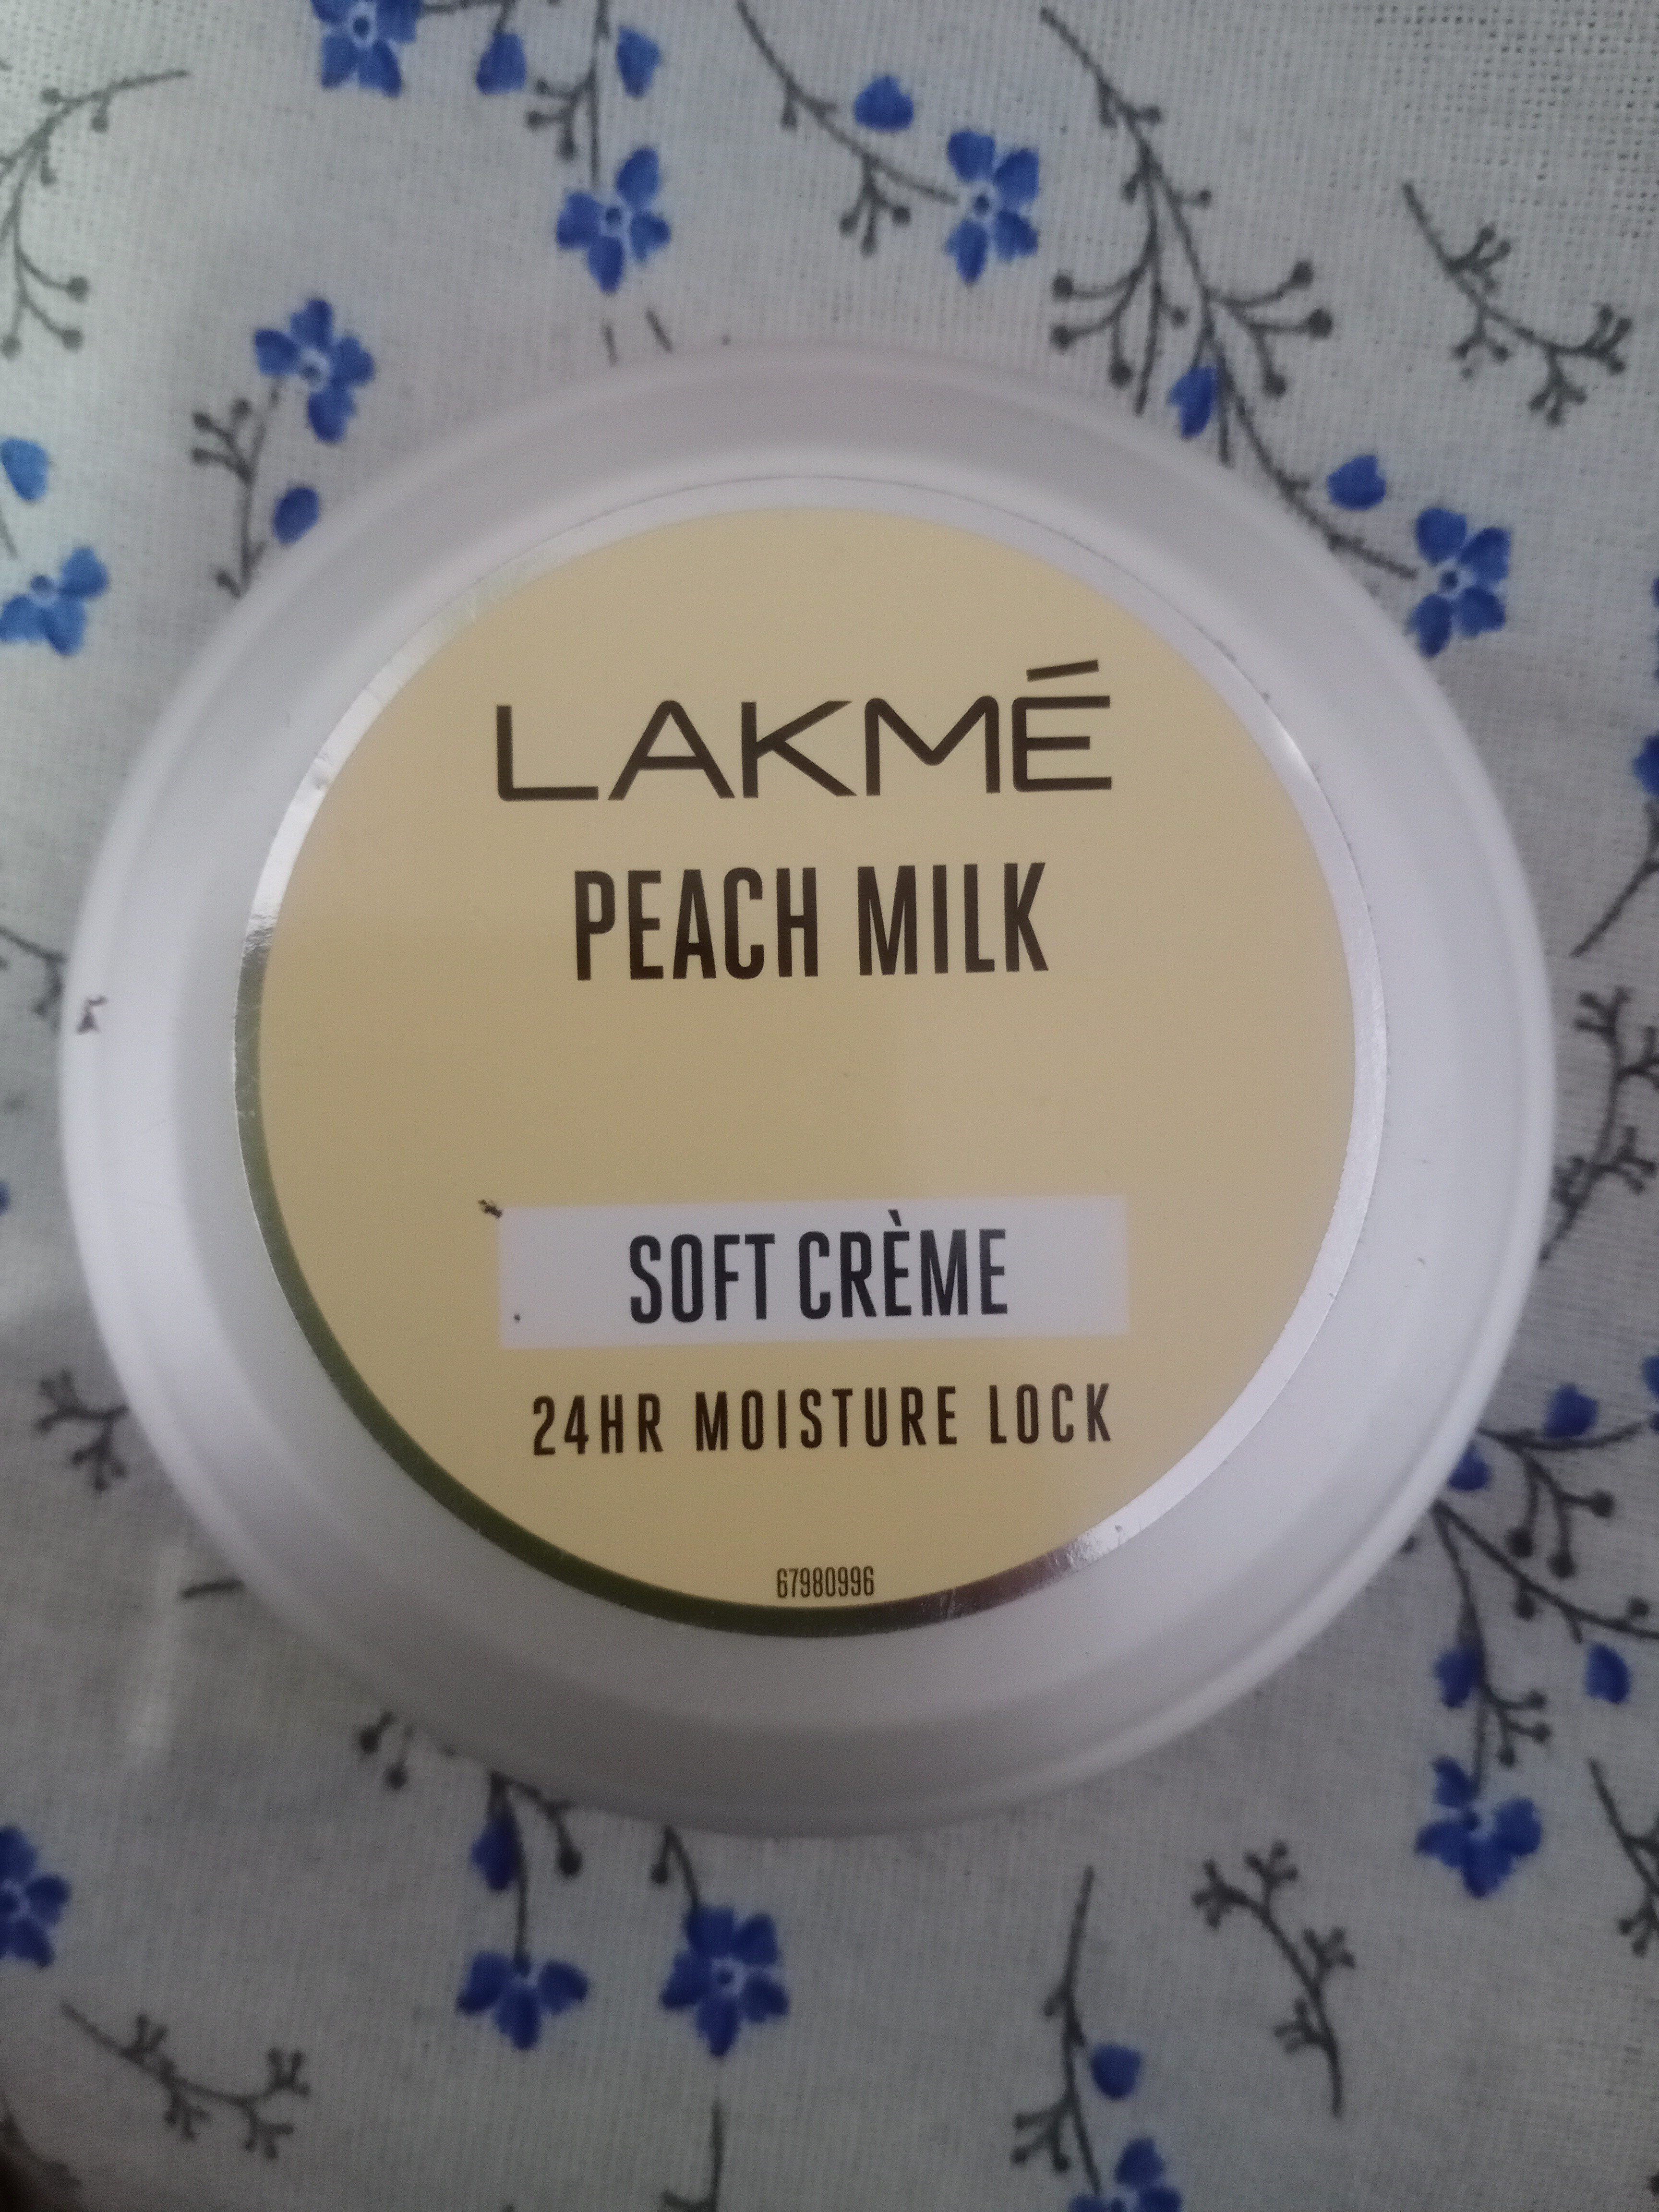 lakme peach milk soft creme - Product - en